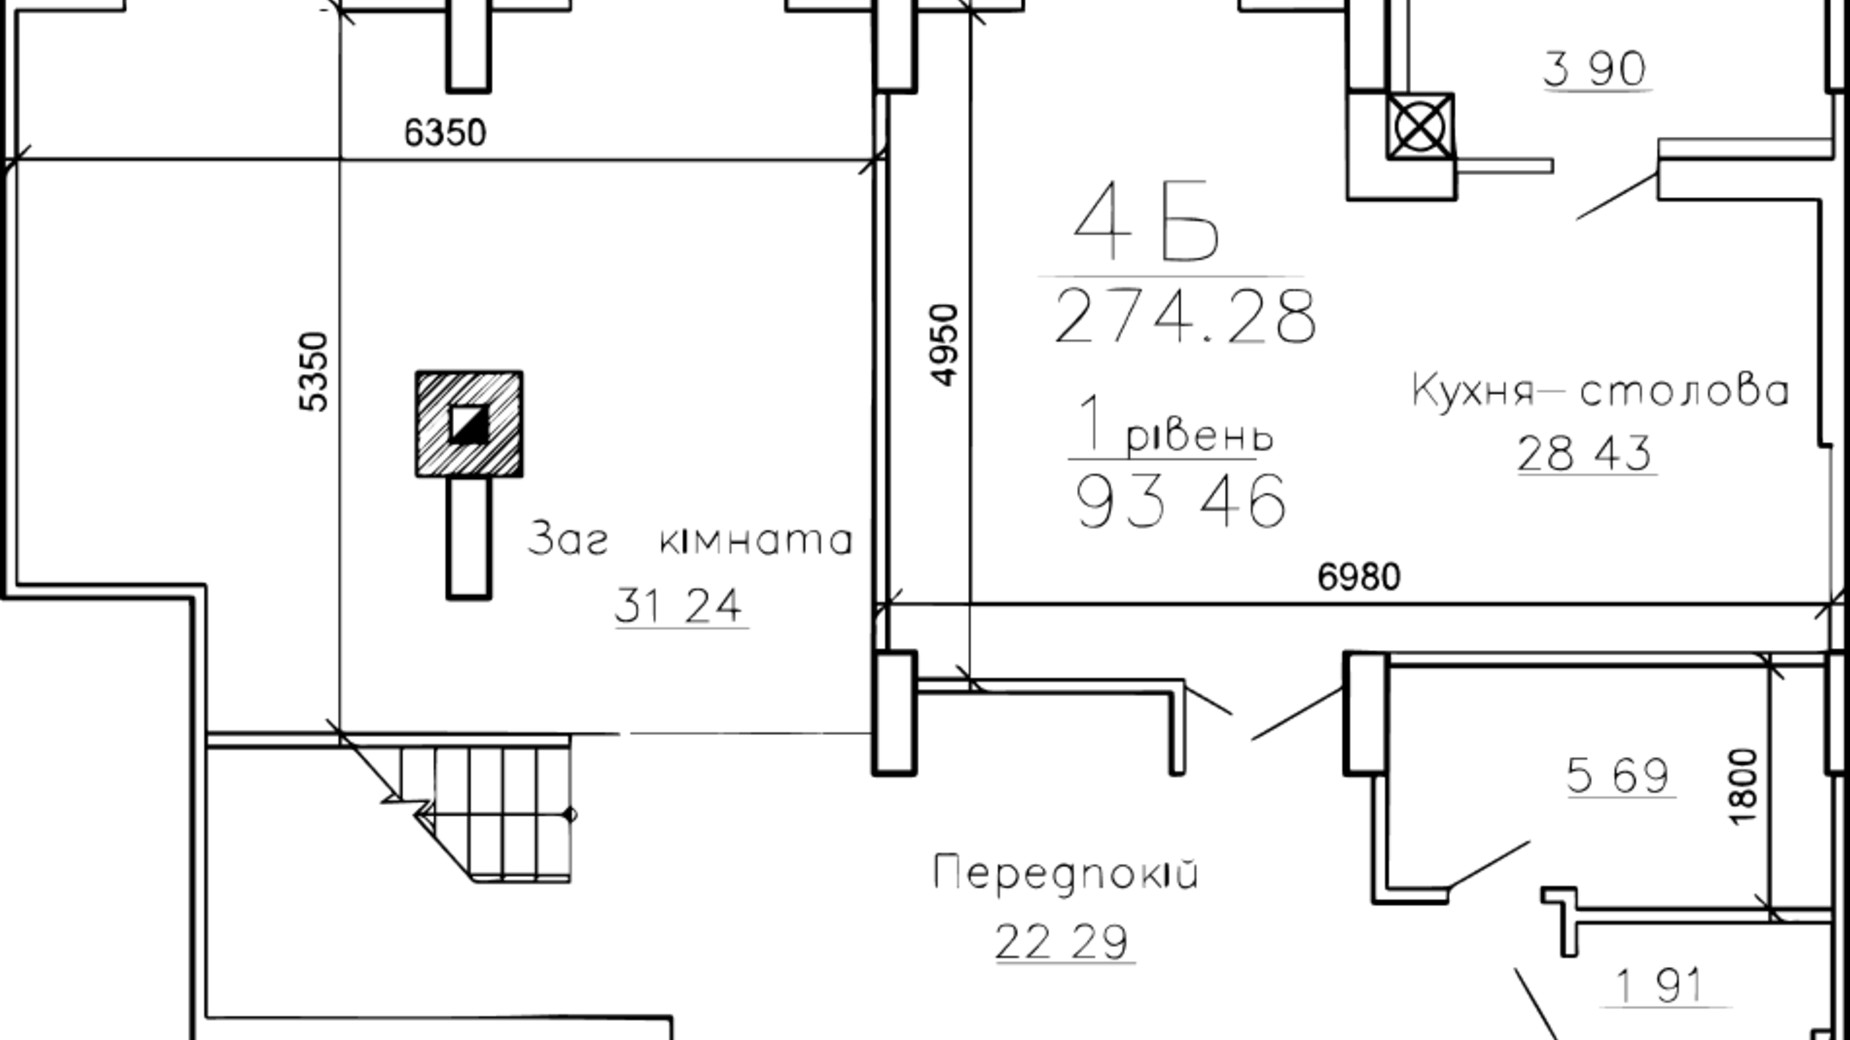 Планировка много­уровневой квартиры в ЖК Панорама 274.28 м², фото 179976